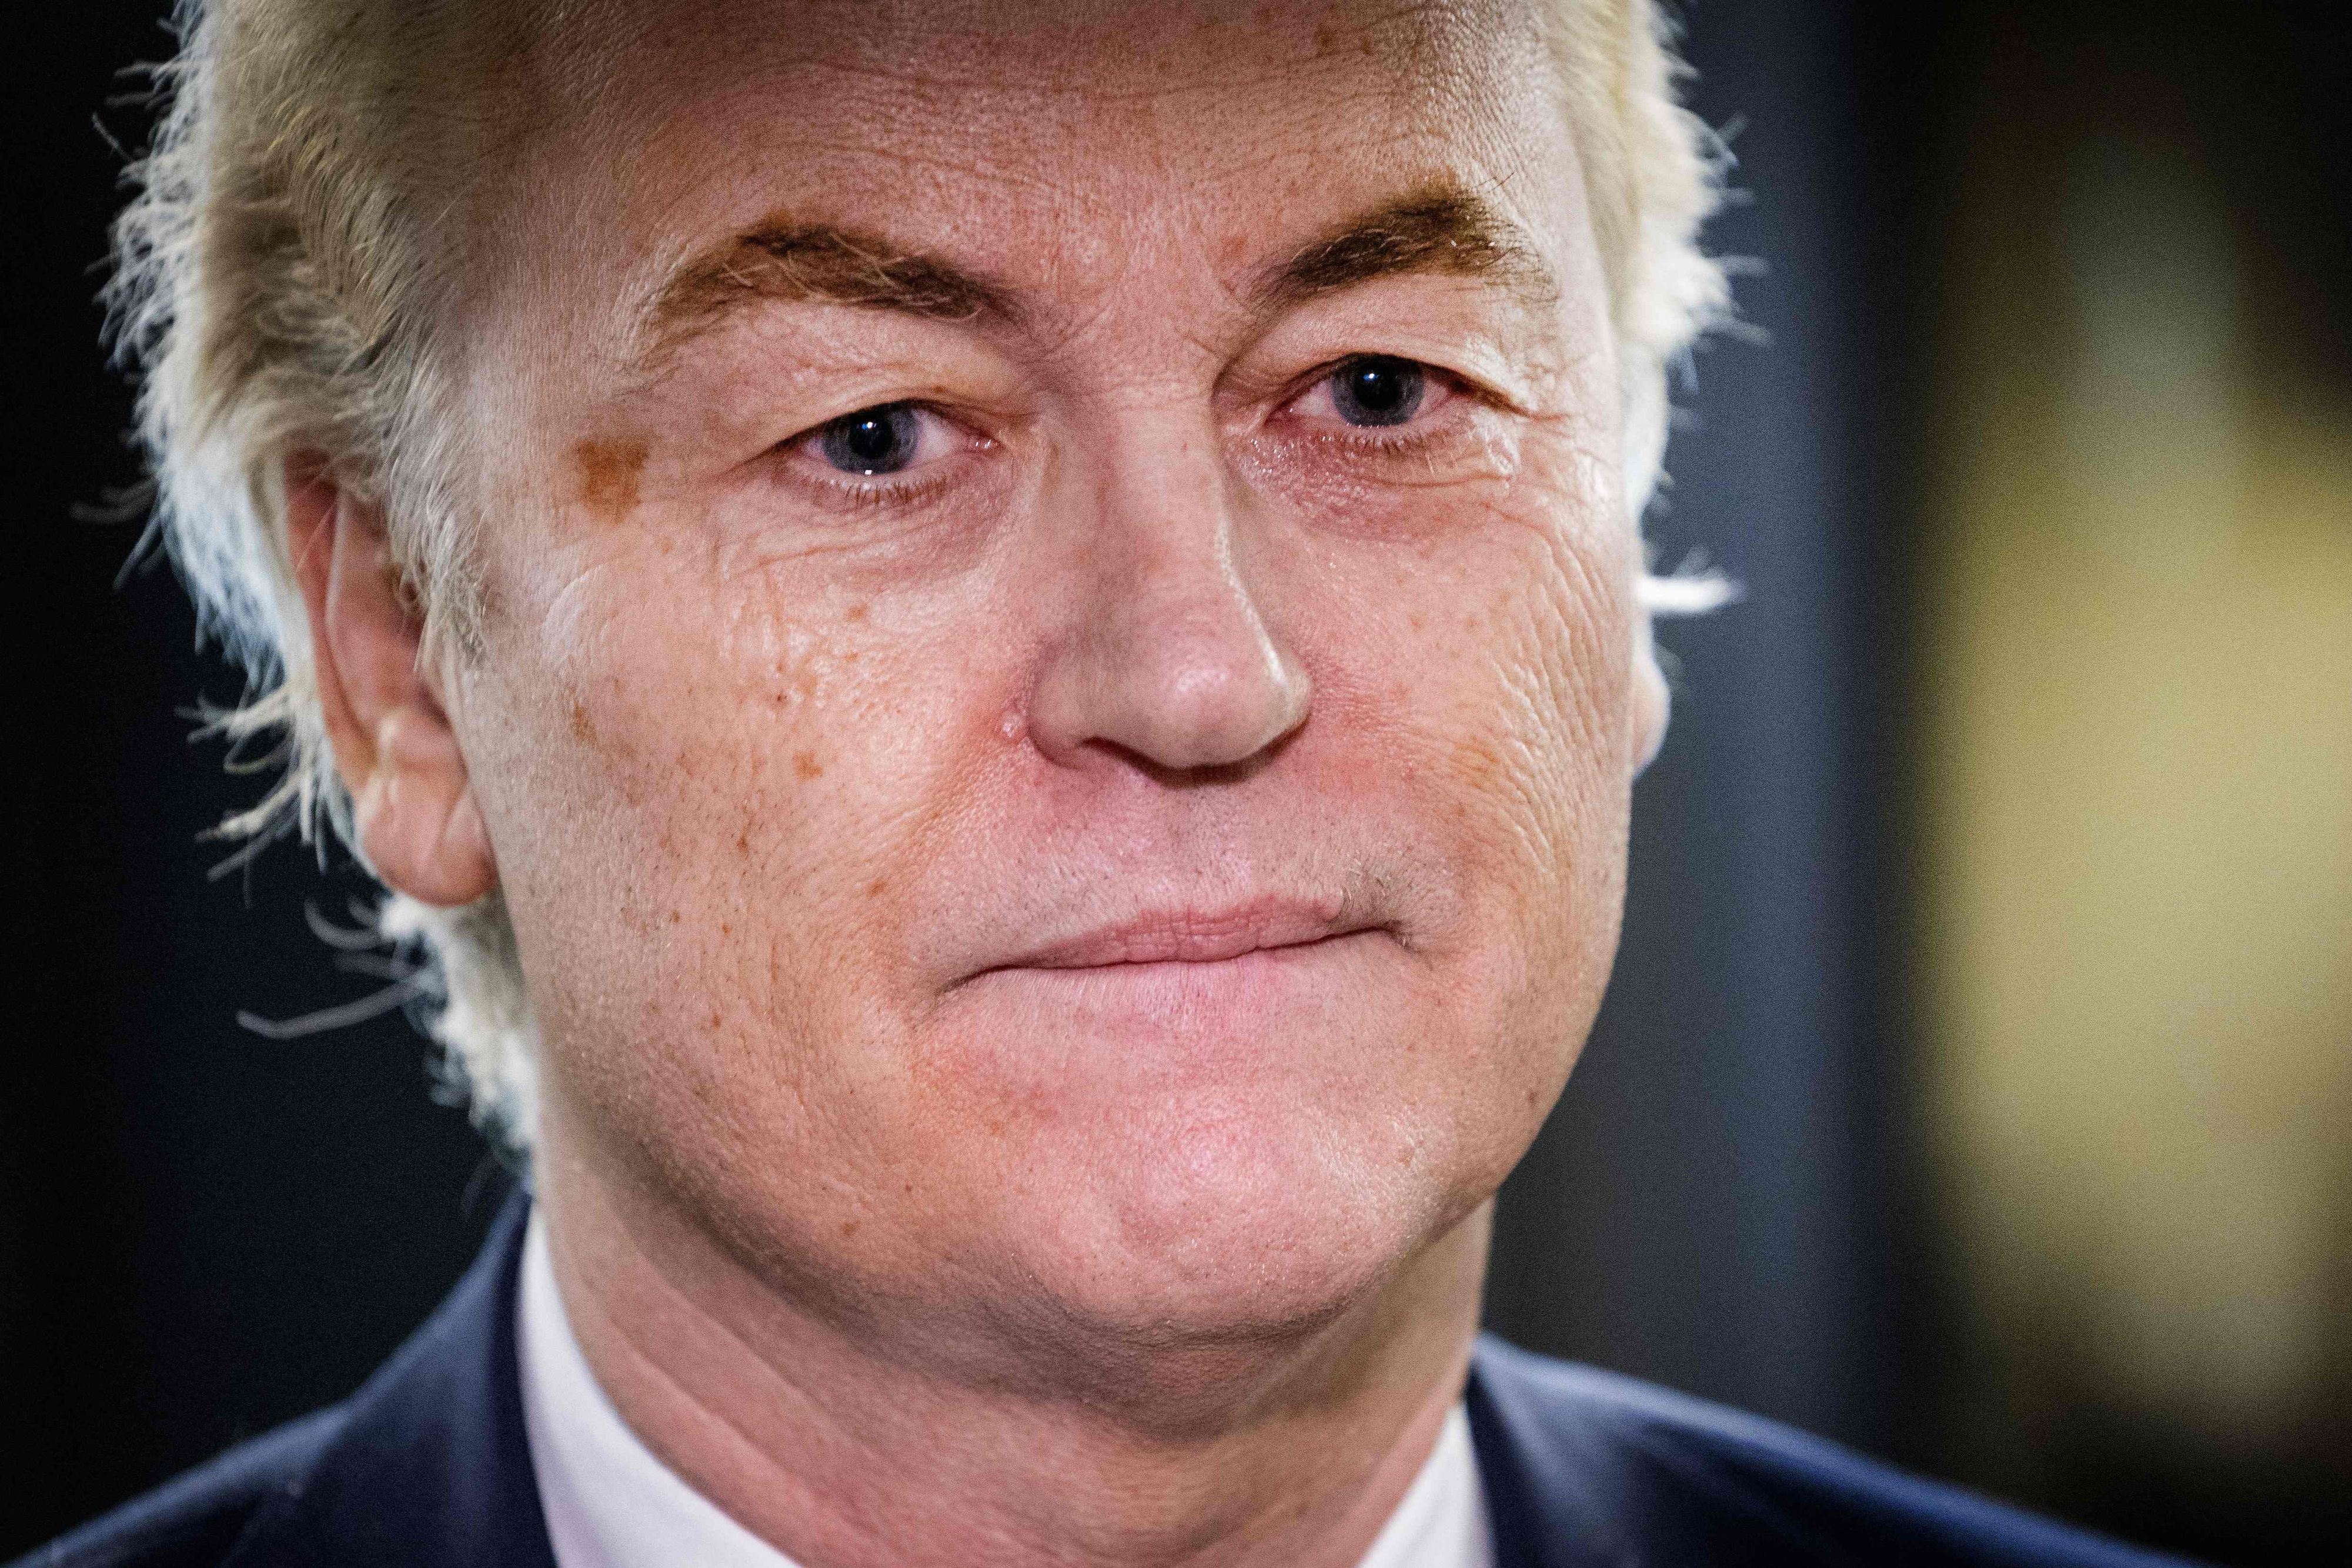 Privé de coalition, Geert Wilders ne dirigera pas le pays